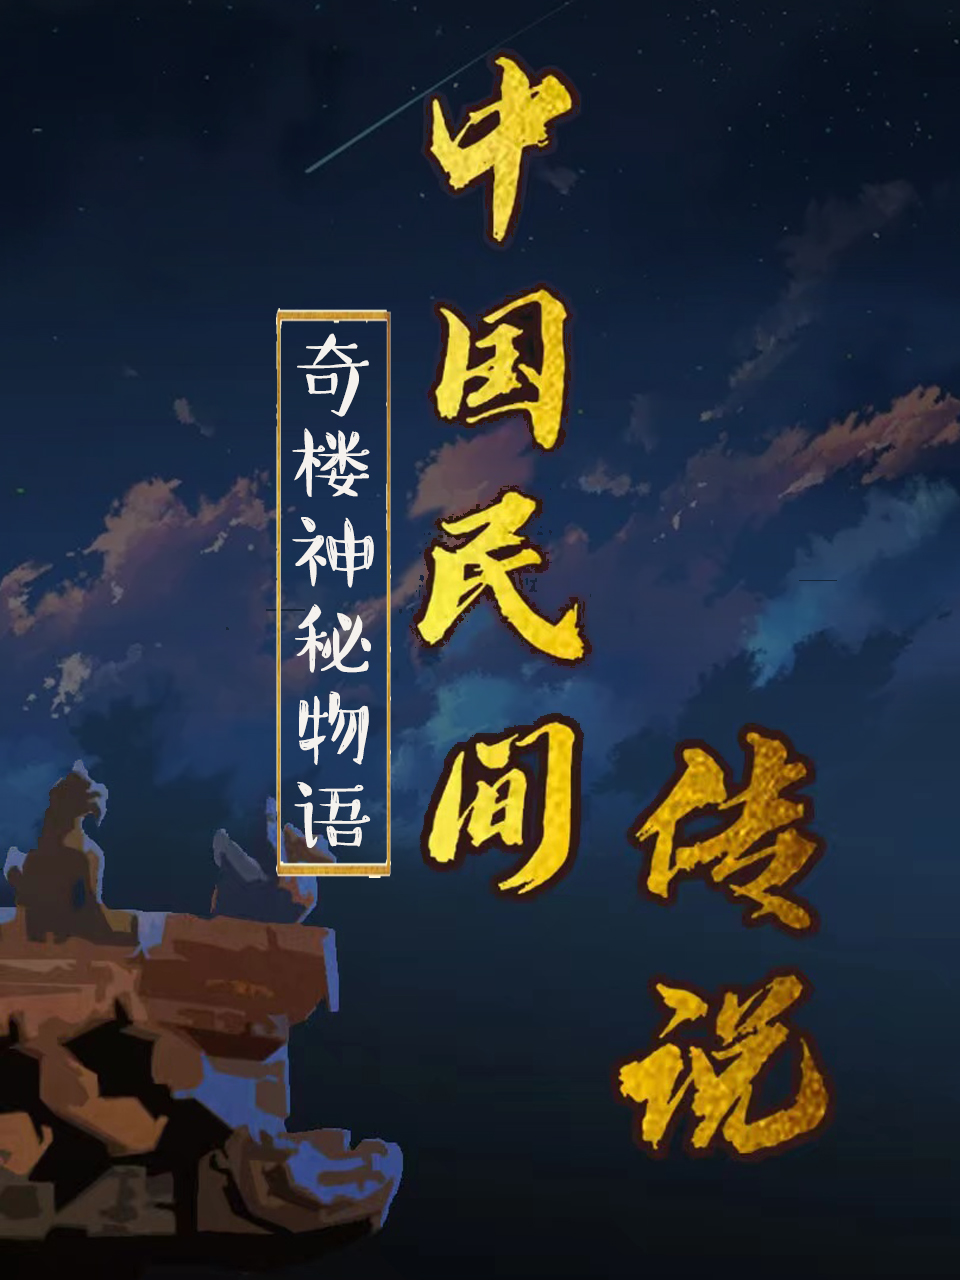 2018动漫《中国民间传说》迅雷下载_中文完整版_百度云网盘720P|1080P资源